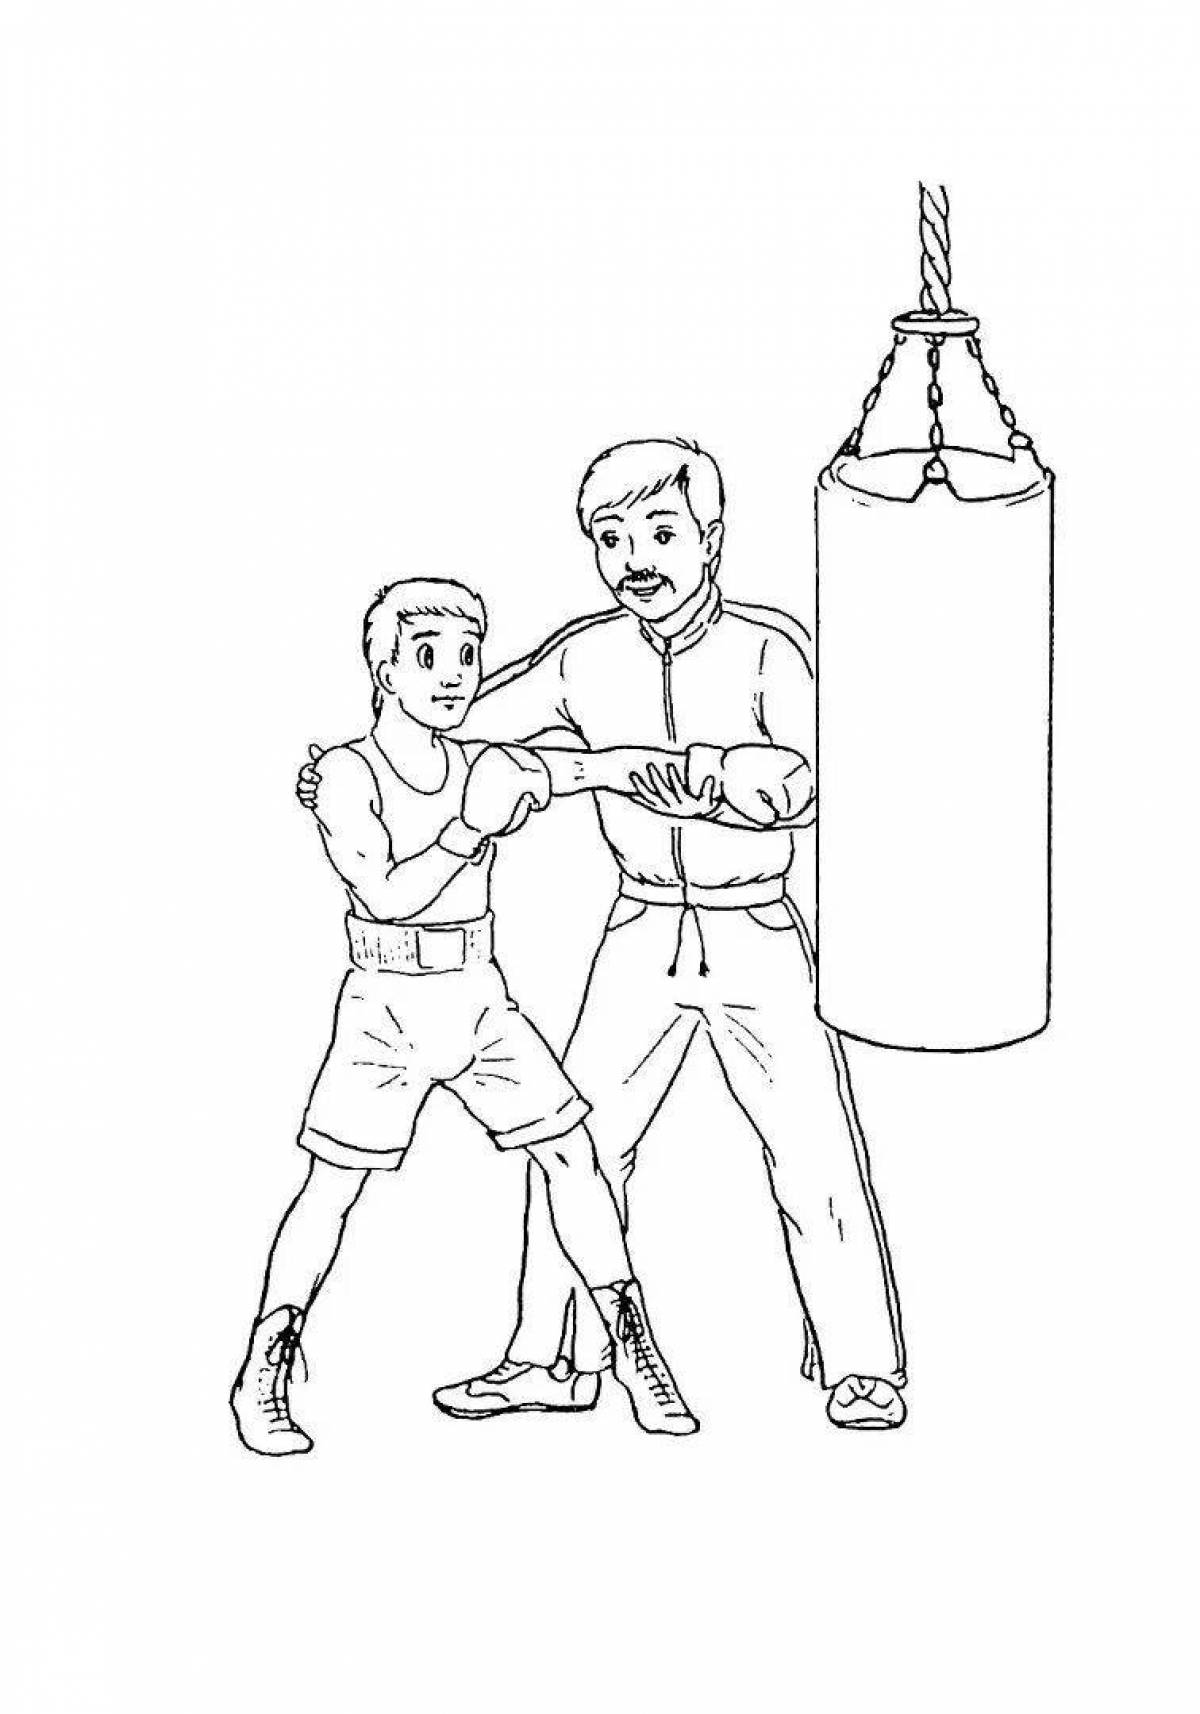 Анимированная страница раскраски бокса для детей